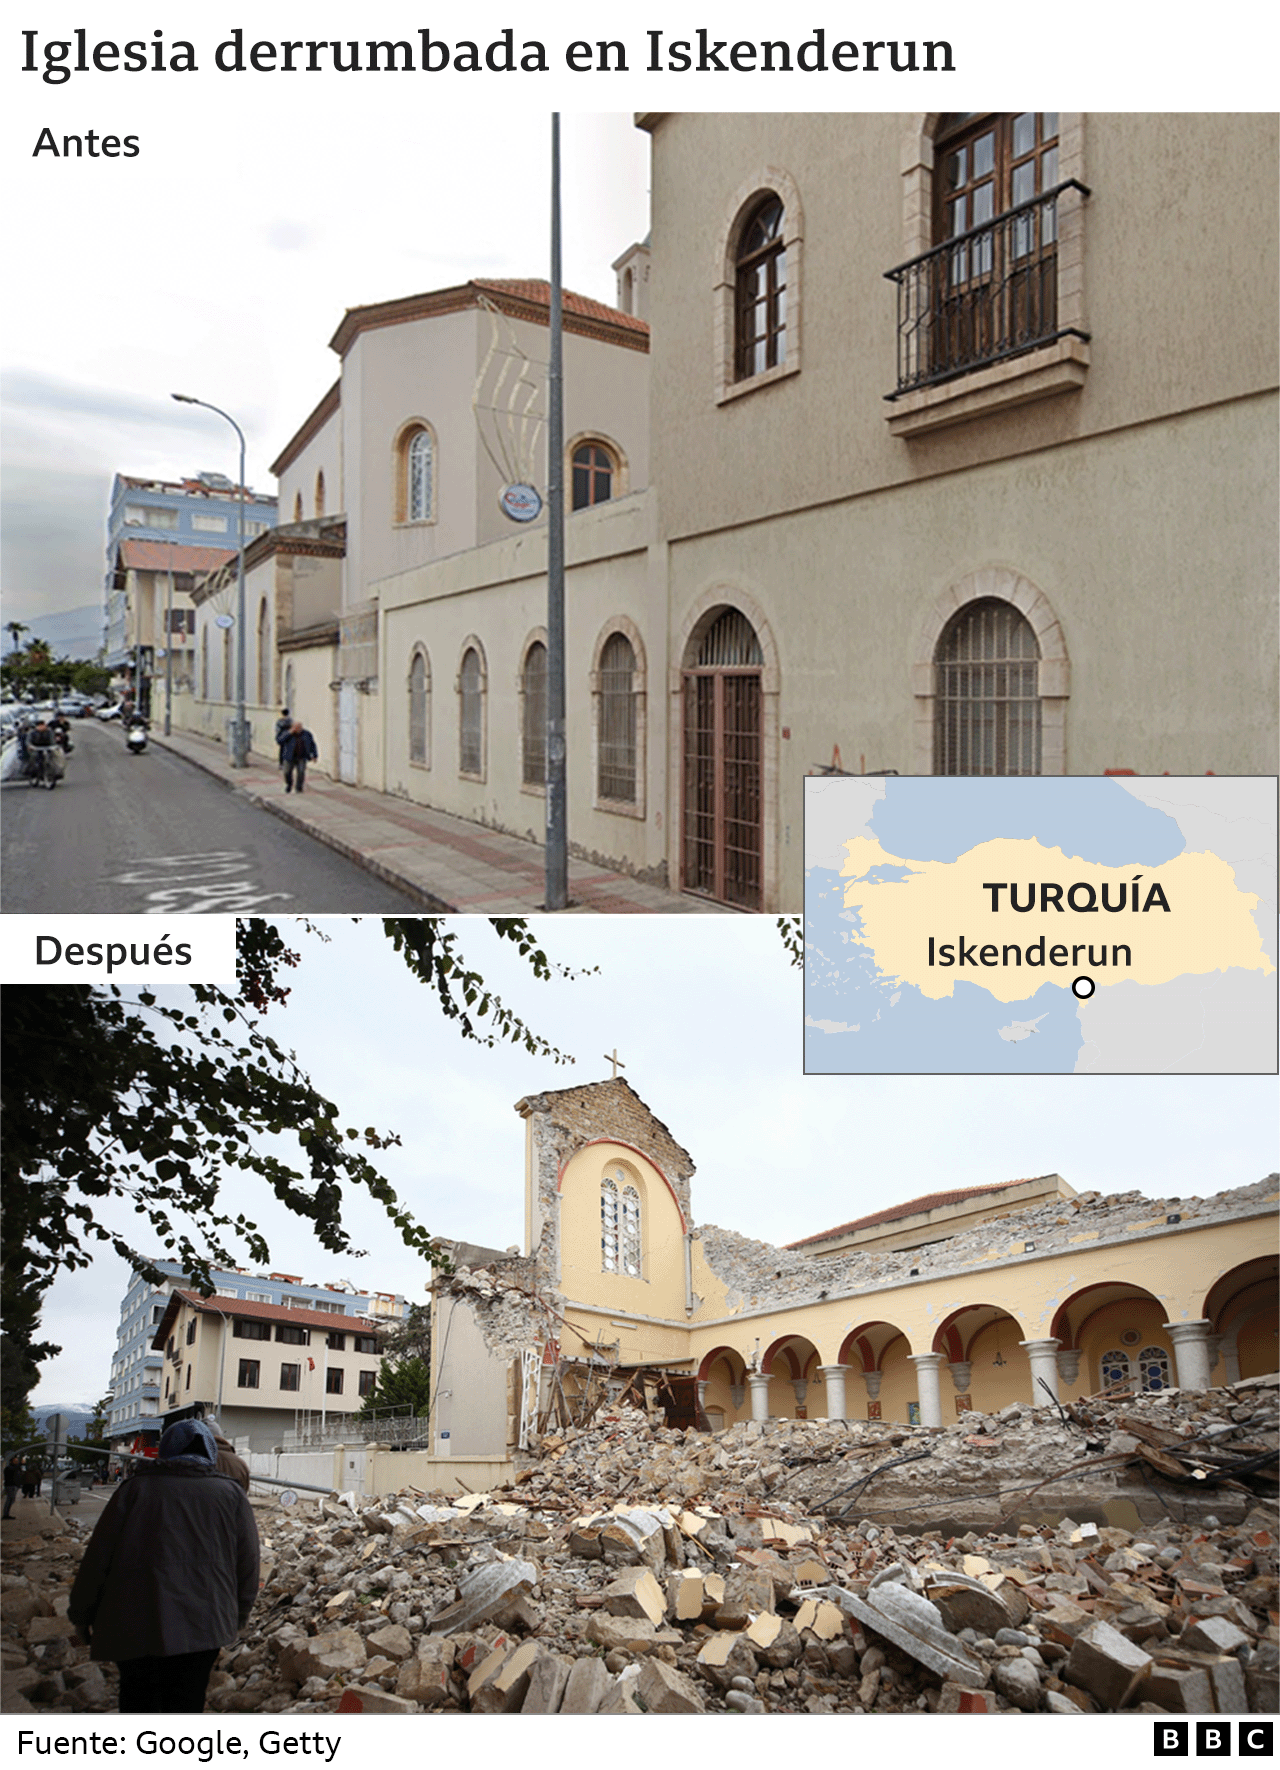 Iglesia derrumbada en Iskenderun